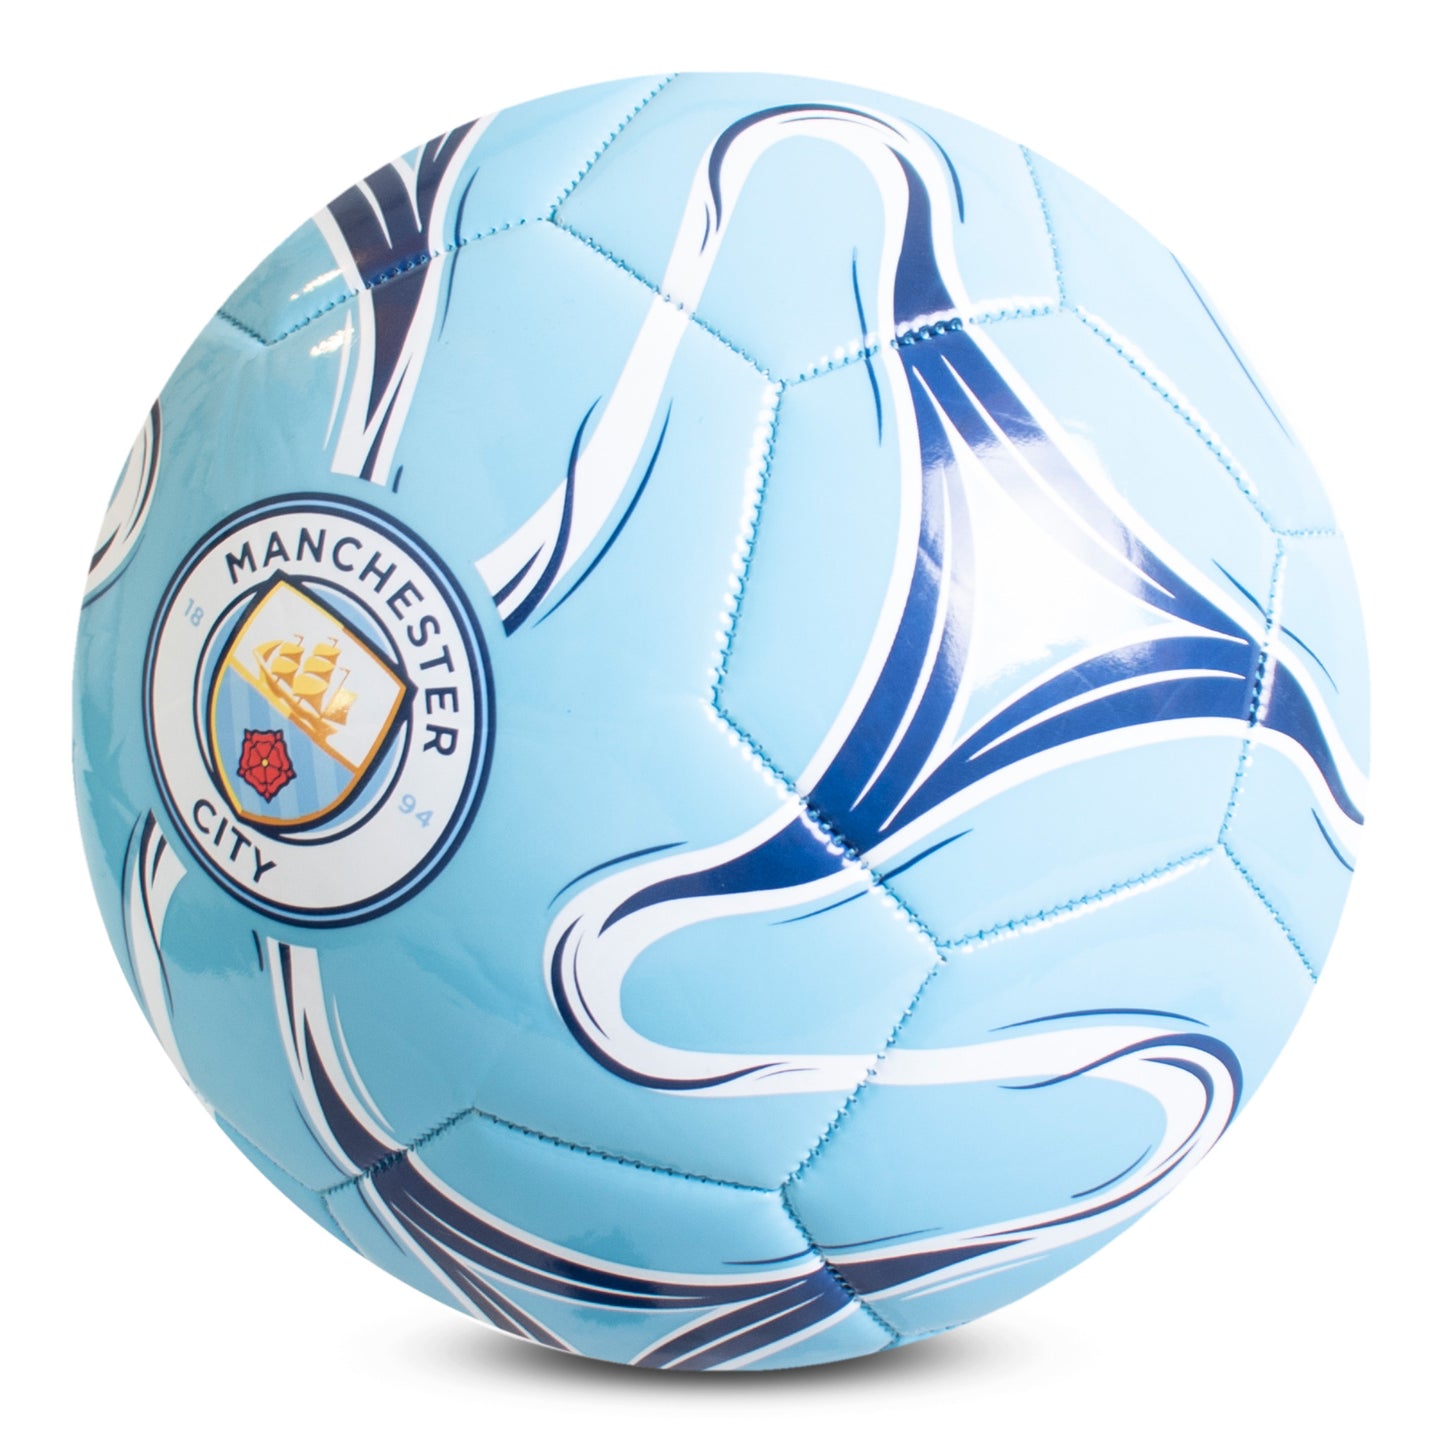 Manchester City Cosmos Football